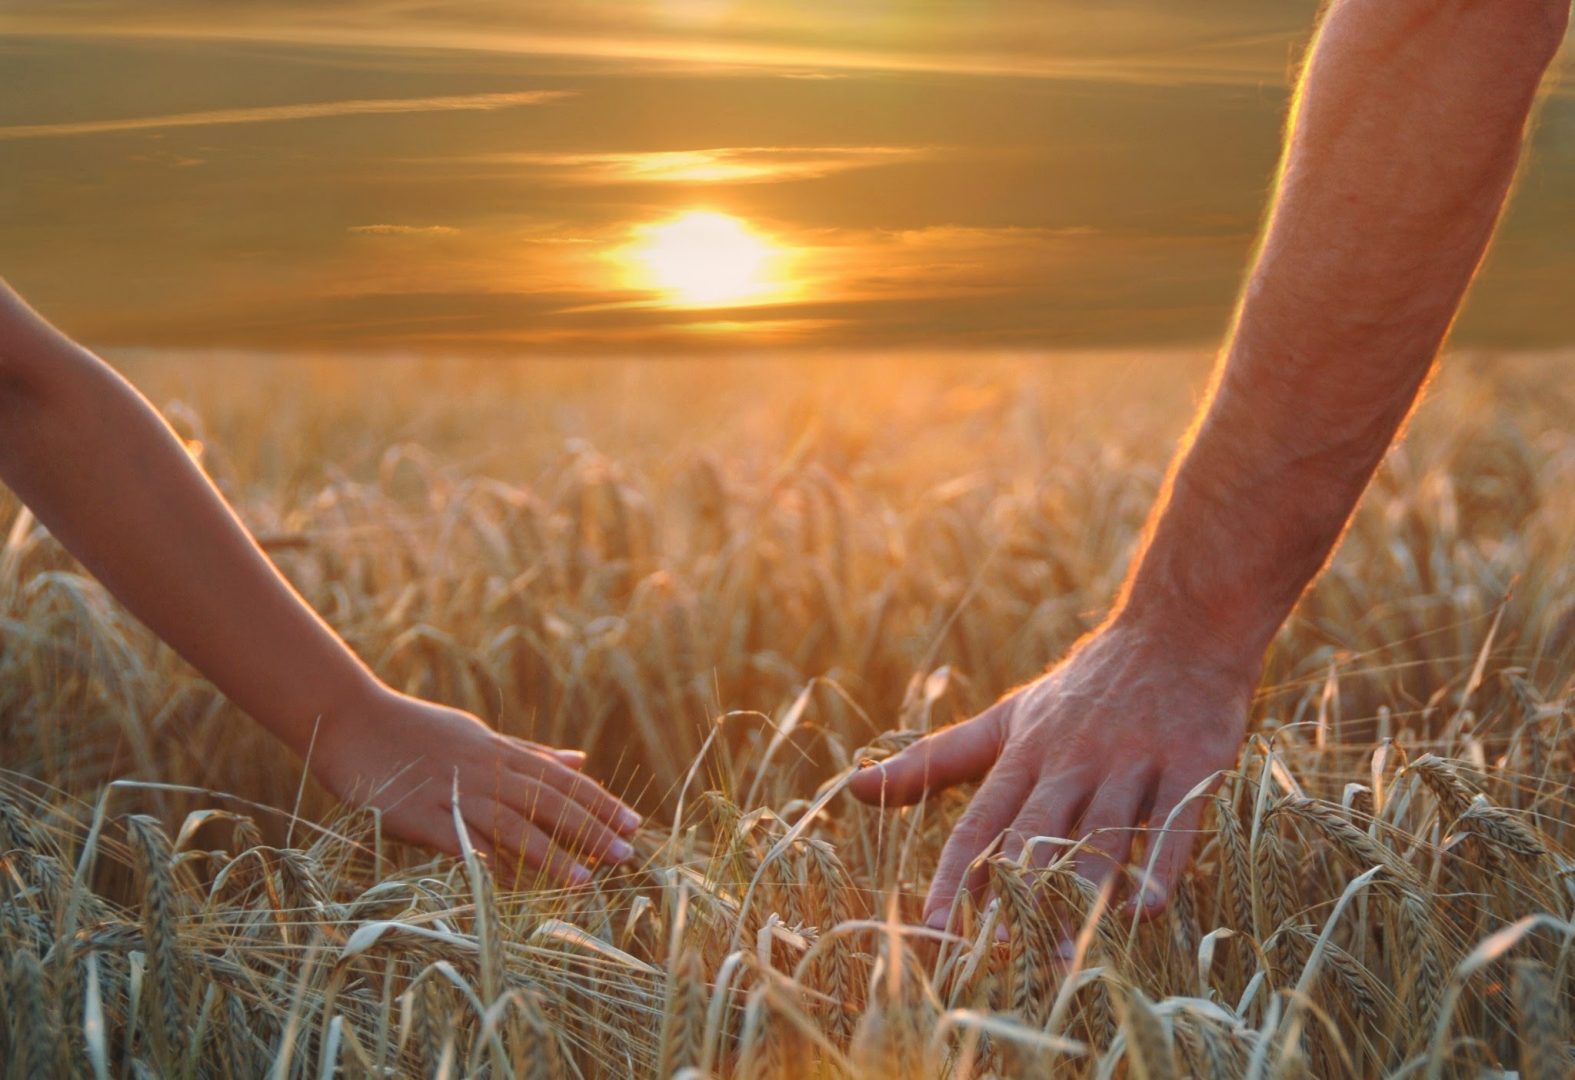 За того что может. Берегите друг друга. Пшеничное поле человек. Берегите друг друга любите. Любите цените и берегите друг друга.